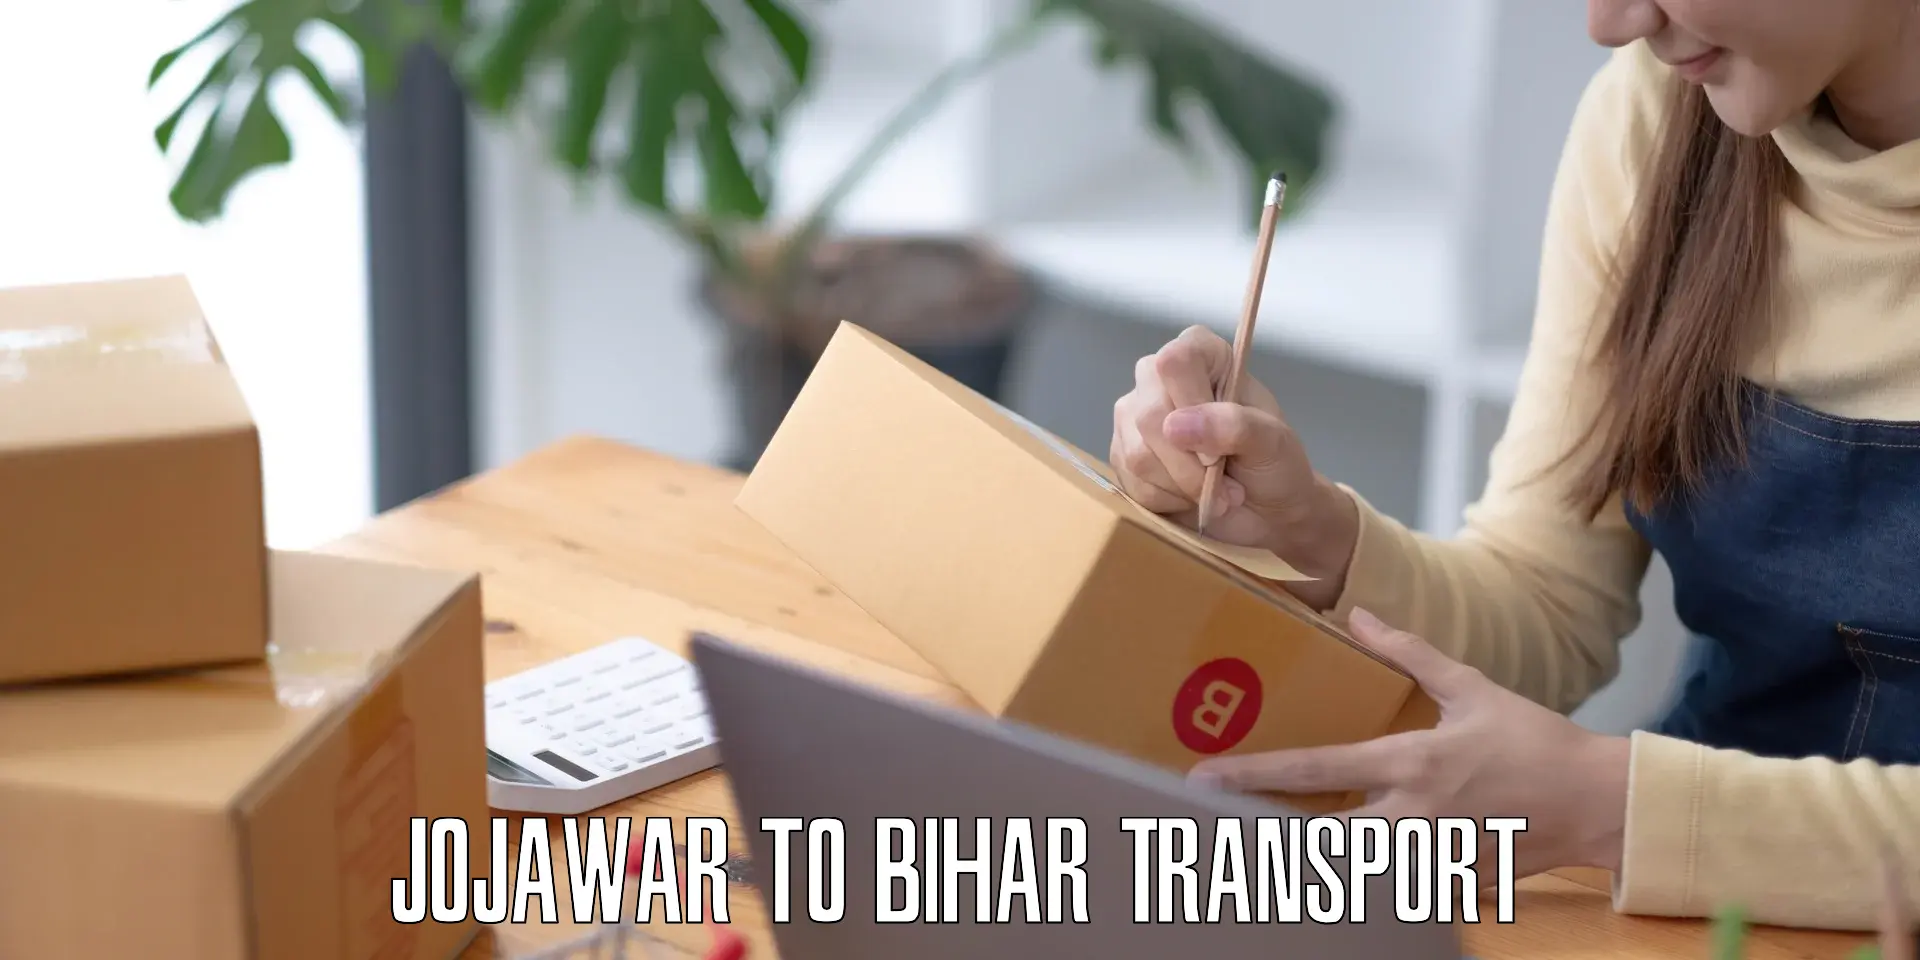 Cargo transport services Jojawar to Saran